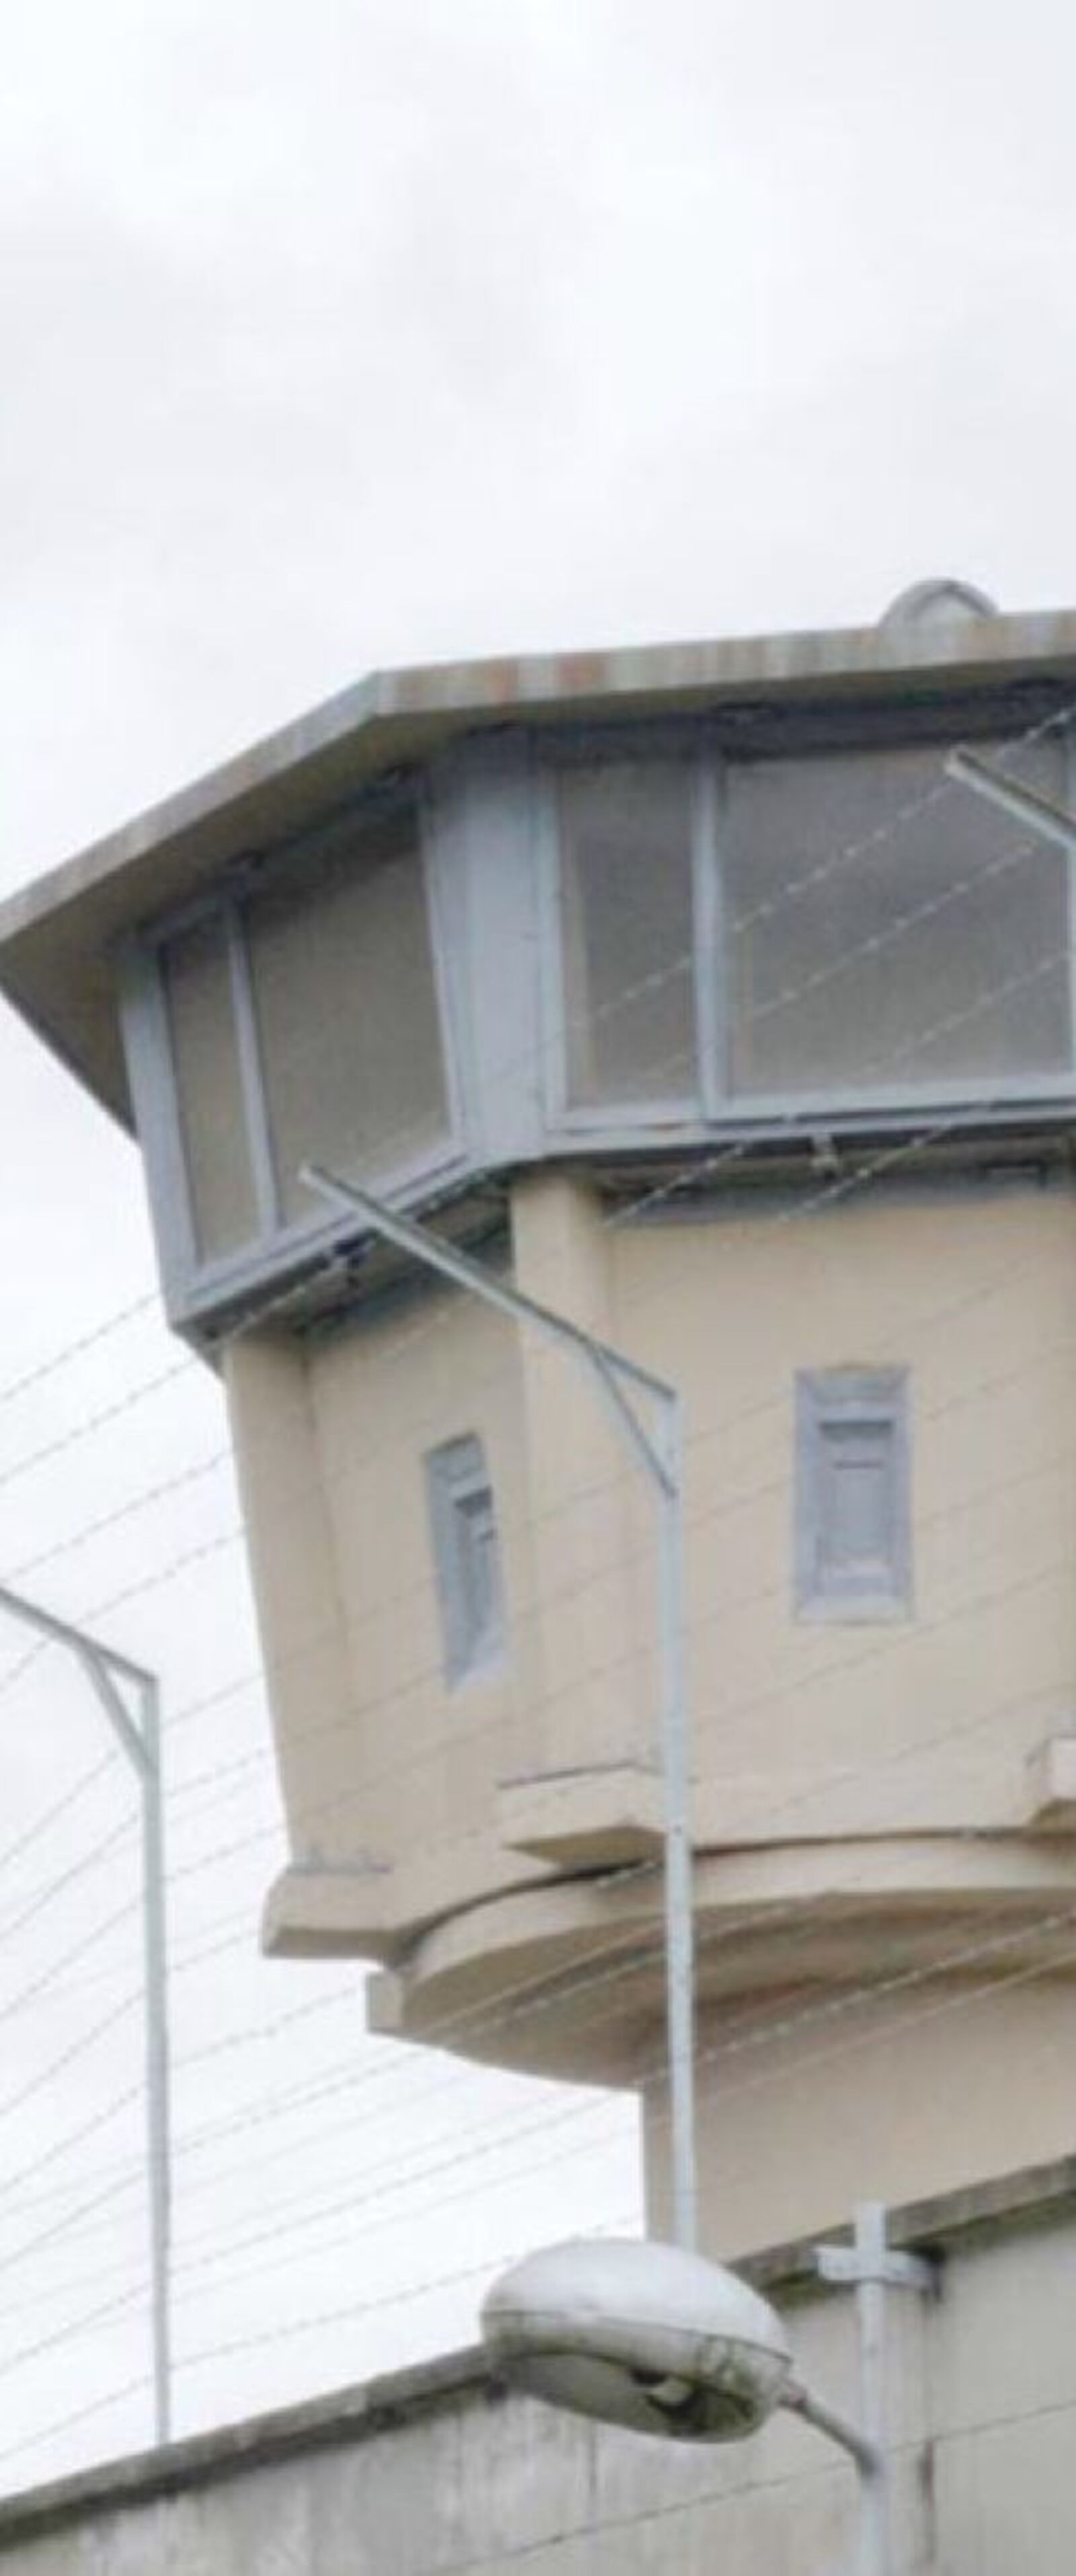 Wachturm Stasi-Gefängnis Hohenschönhausen